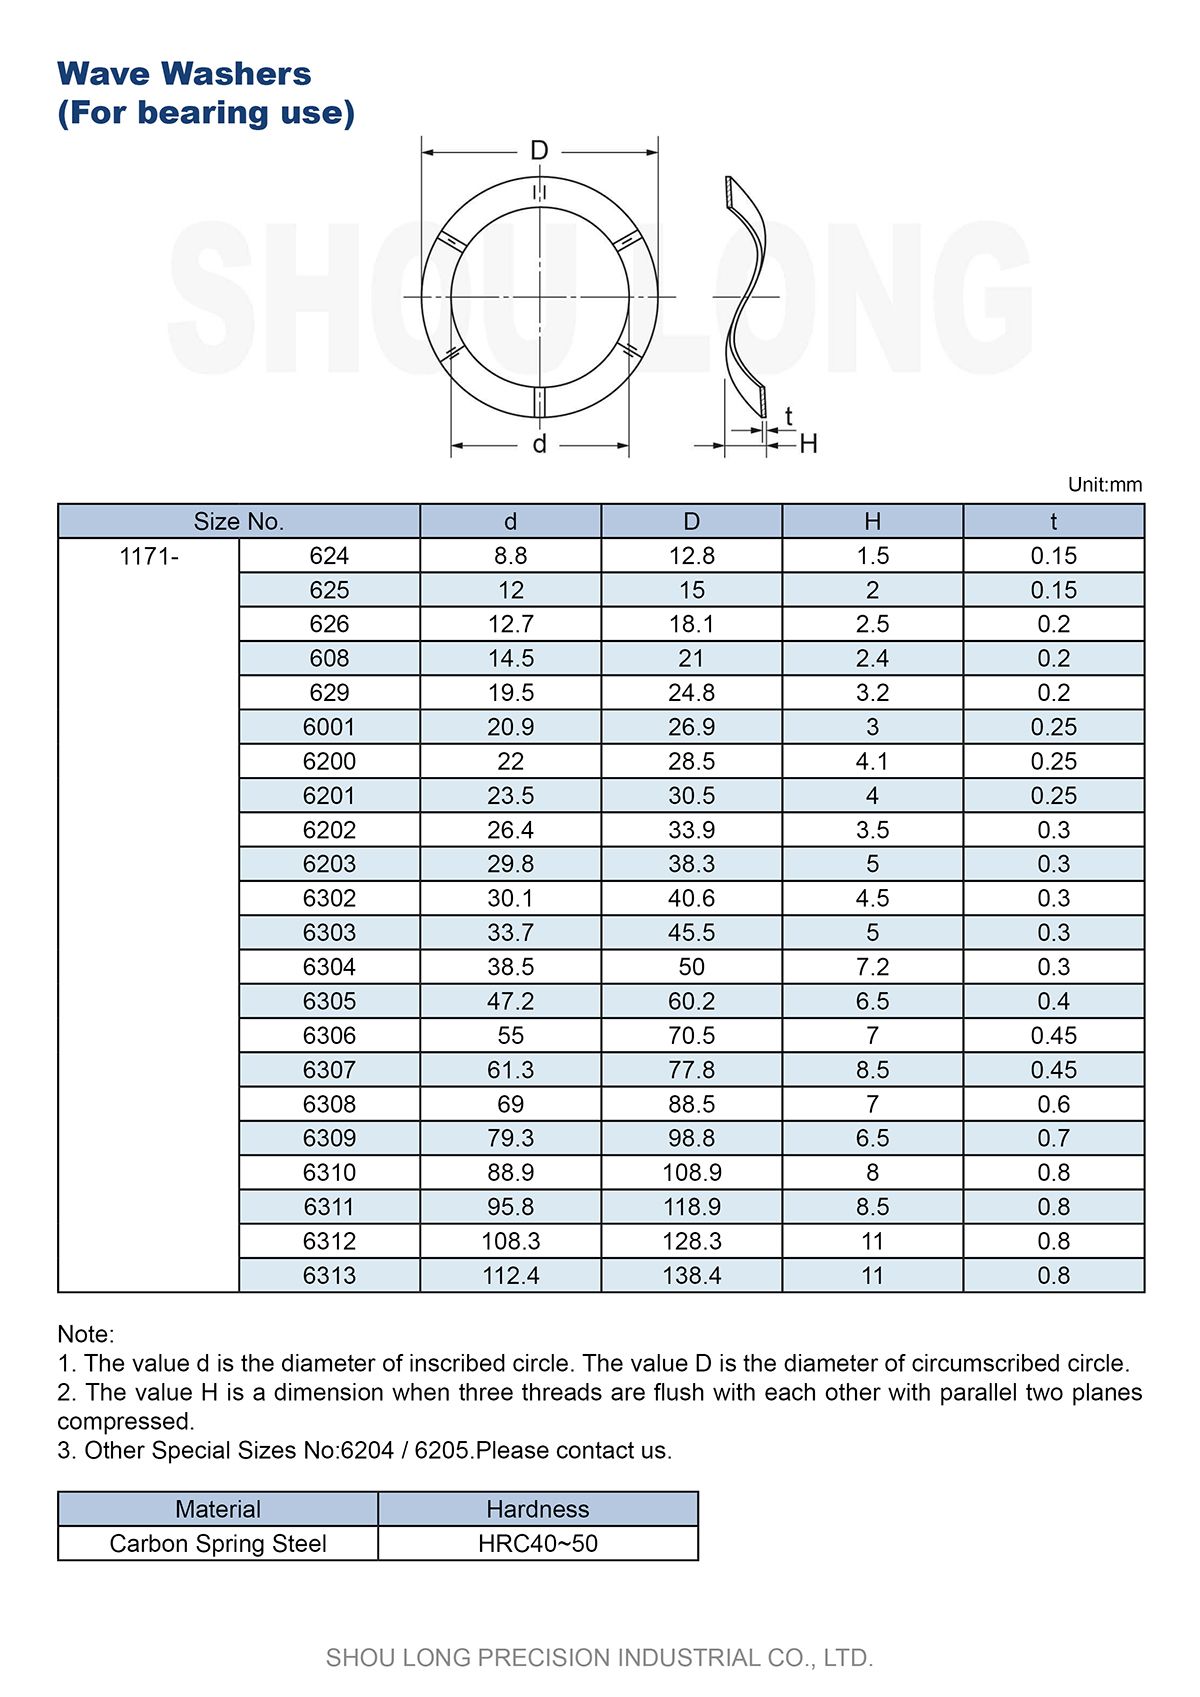 Спецификация волновых шайб по JIS метрической системе для использования с подшипниками